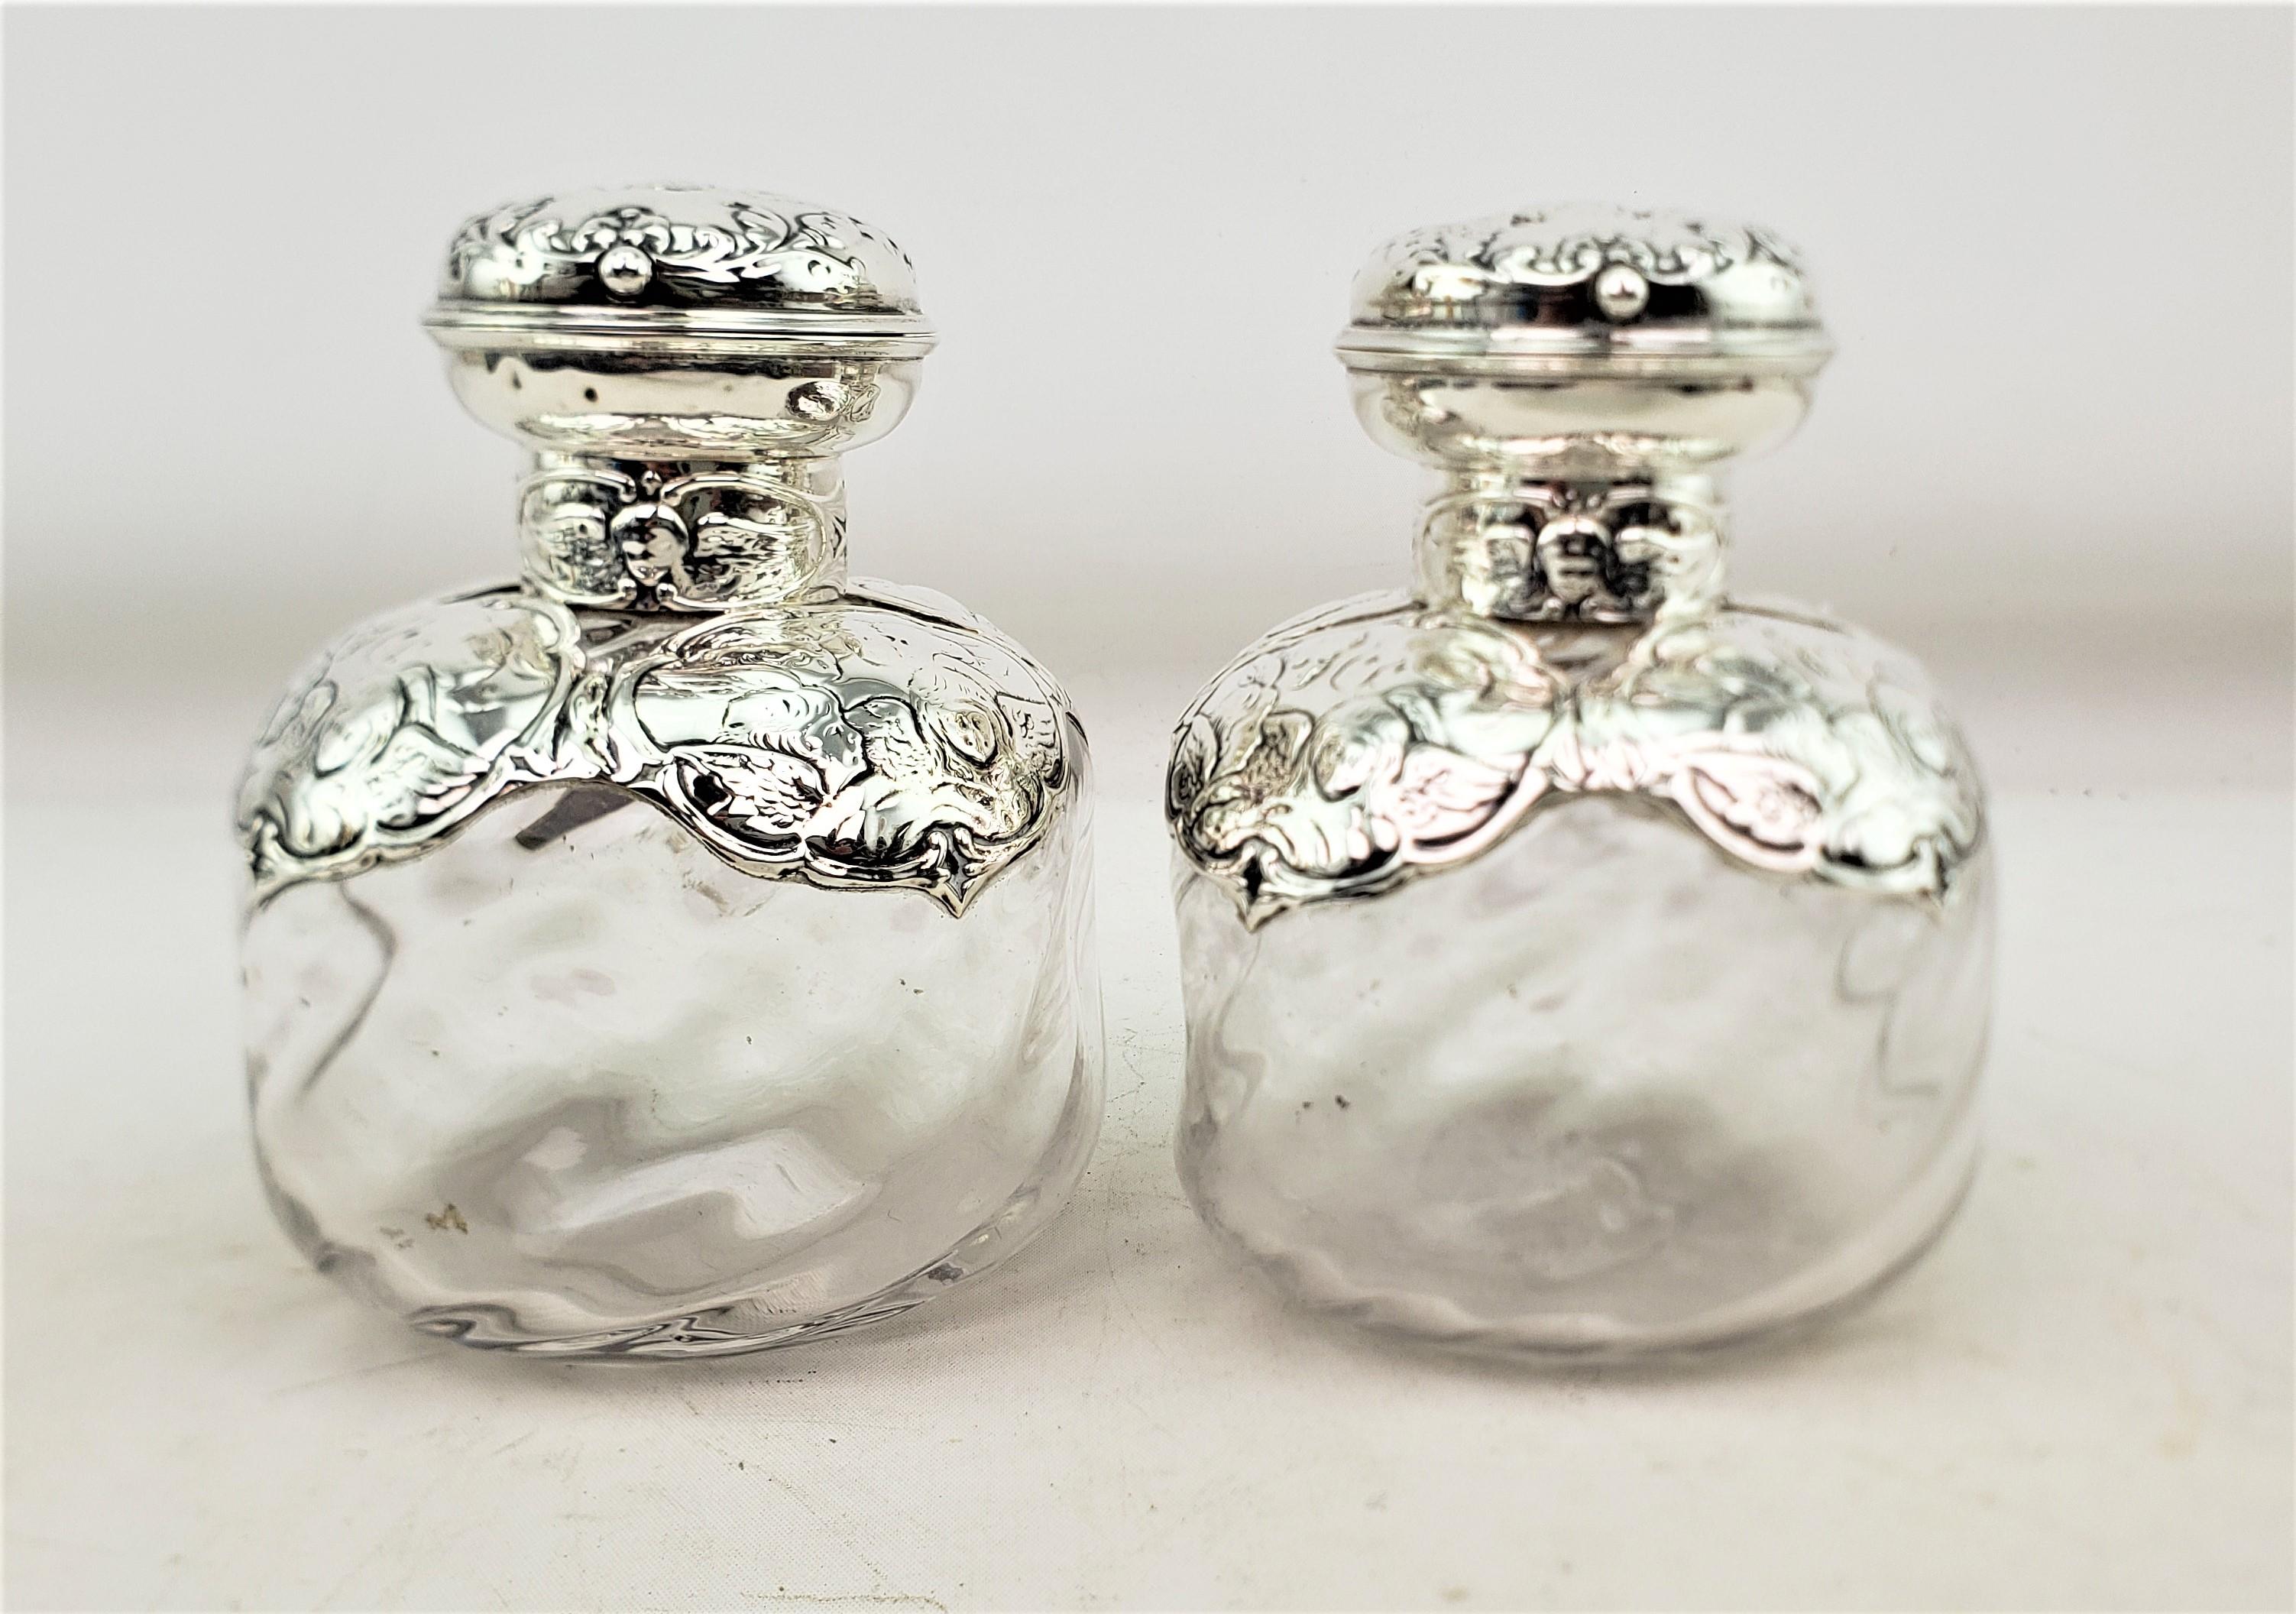 Dieses große Paar antiker Parfümflaschen wurde von der bekannten englischen Silberschmiede William Comyns & Sons Ltd. hergestellt. Es stammt aus der Zeit um 1880 und ist im viktorianischen Stil gehalten. Die Flaschen bestehen aus klarem Glas mit